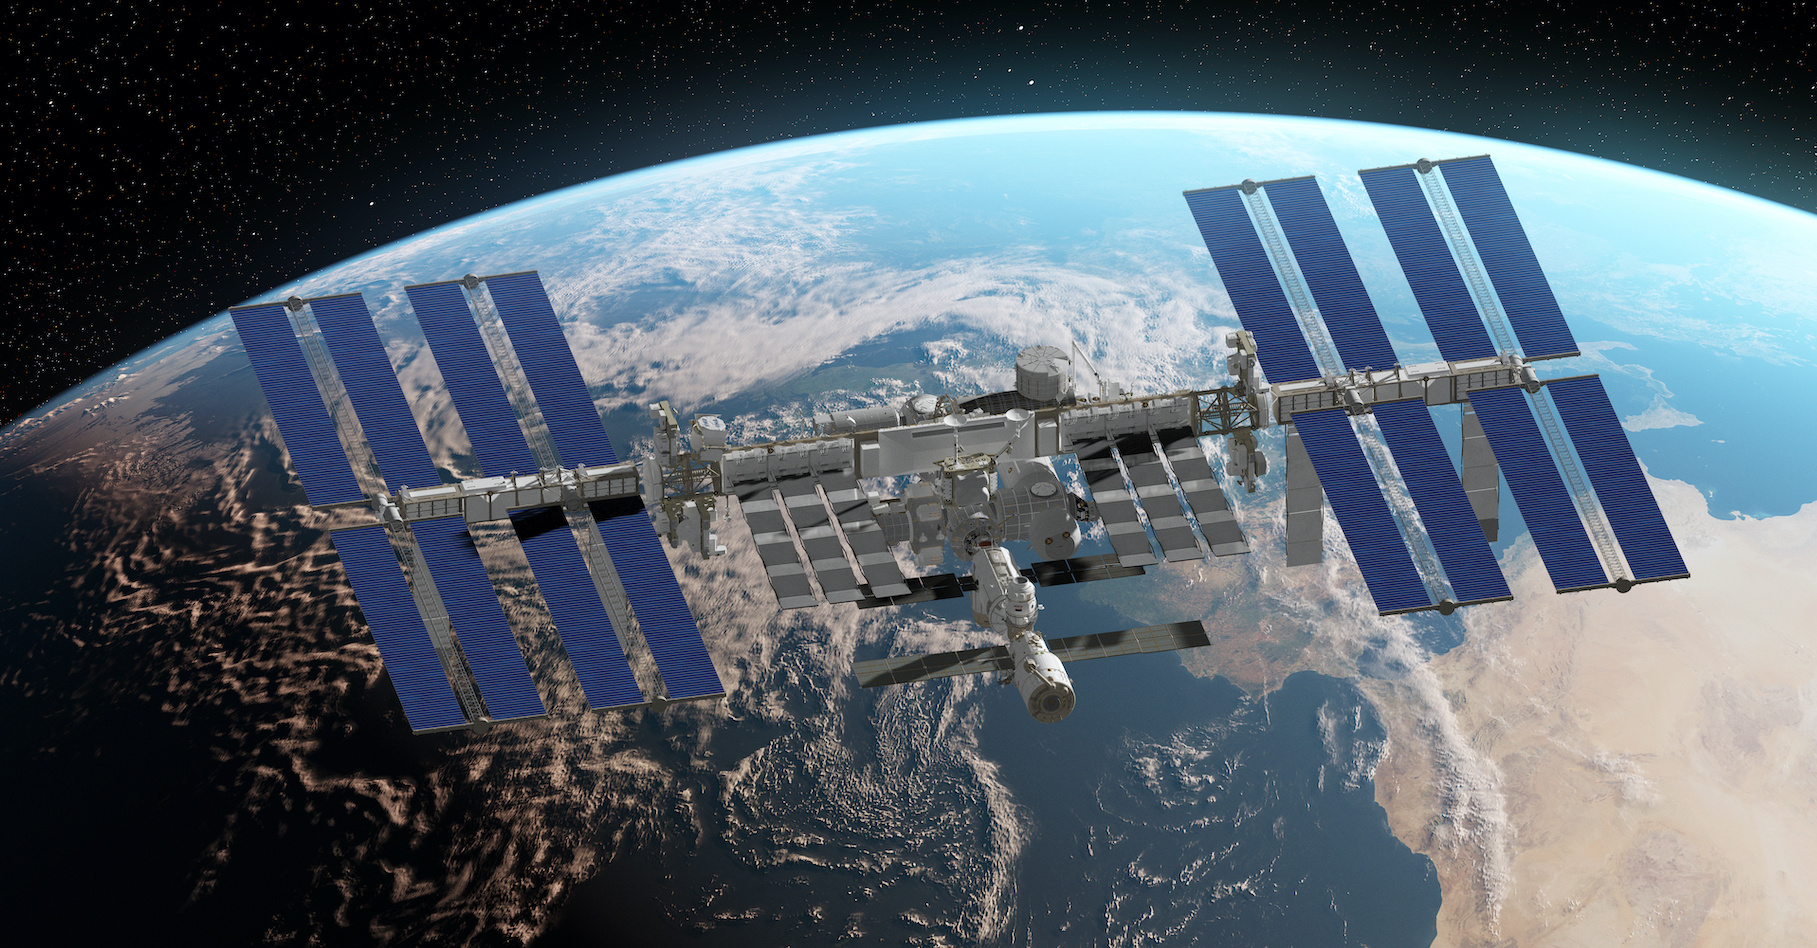 La Station spatiale internationale est prévue pour fonctionner au moins jusqu’en 2024.&nbsp;© SciePro, Adobe Stock